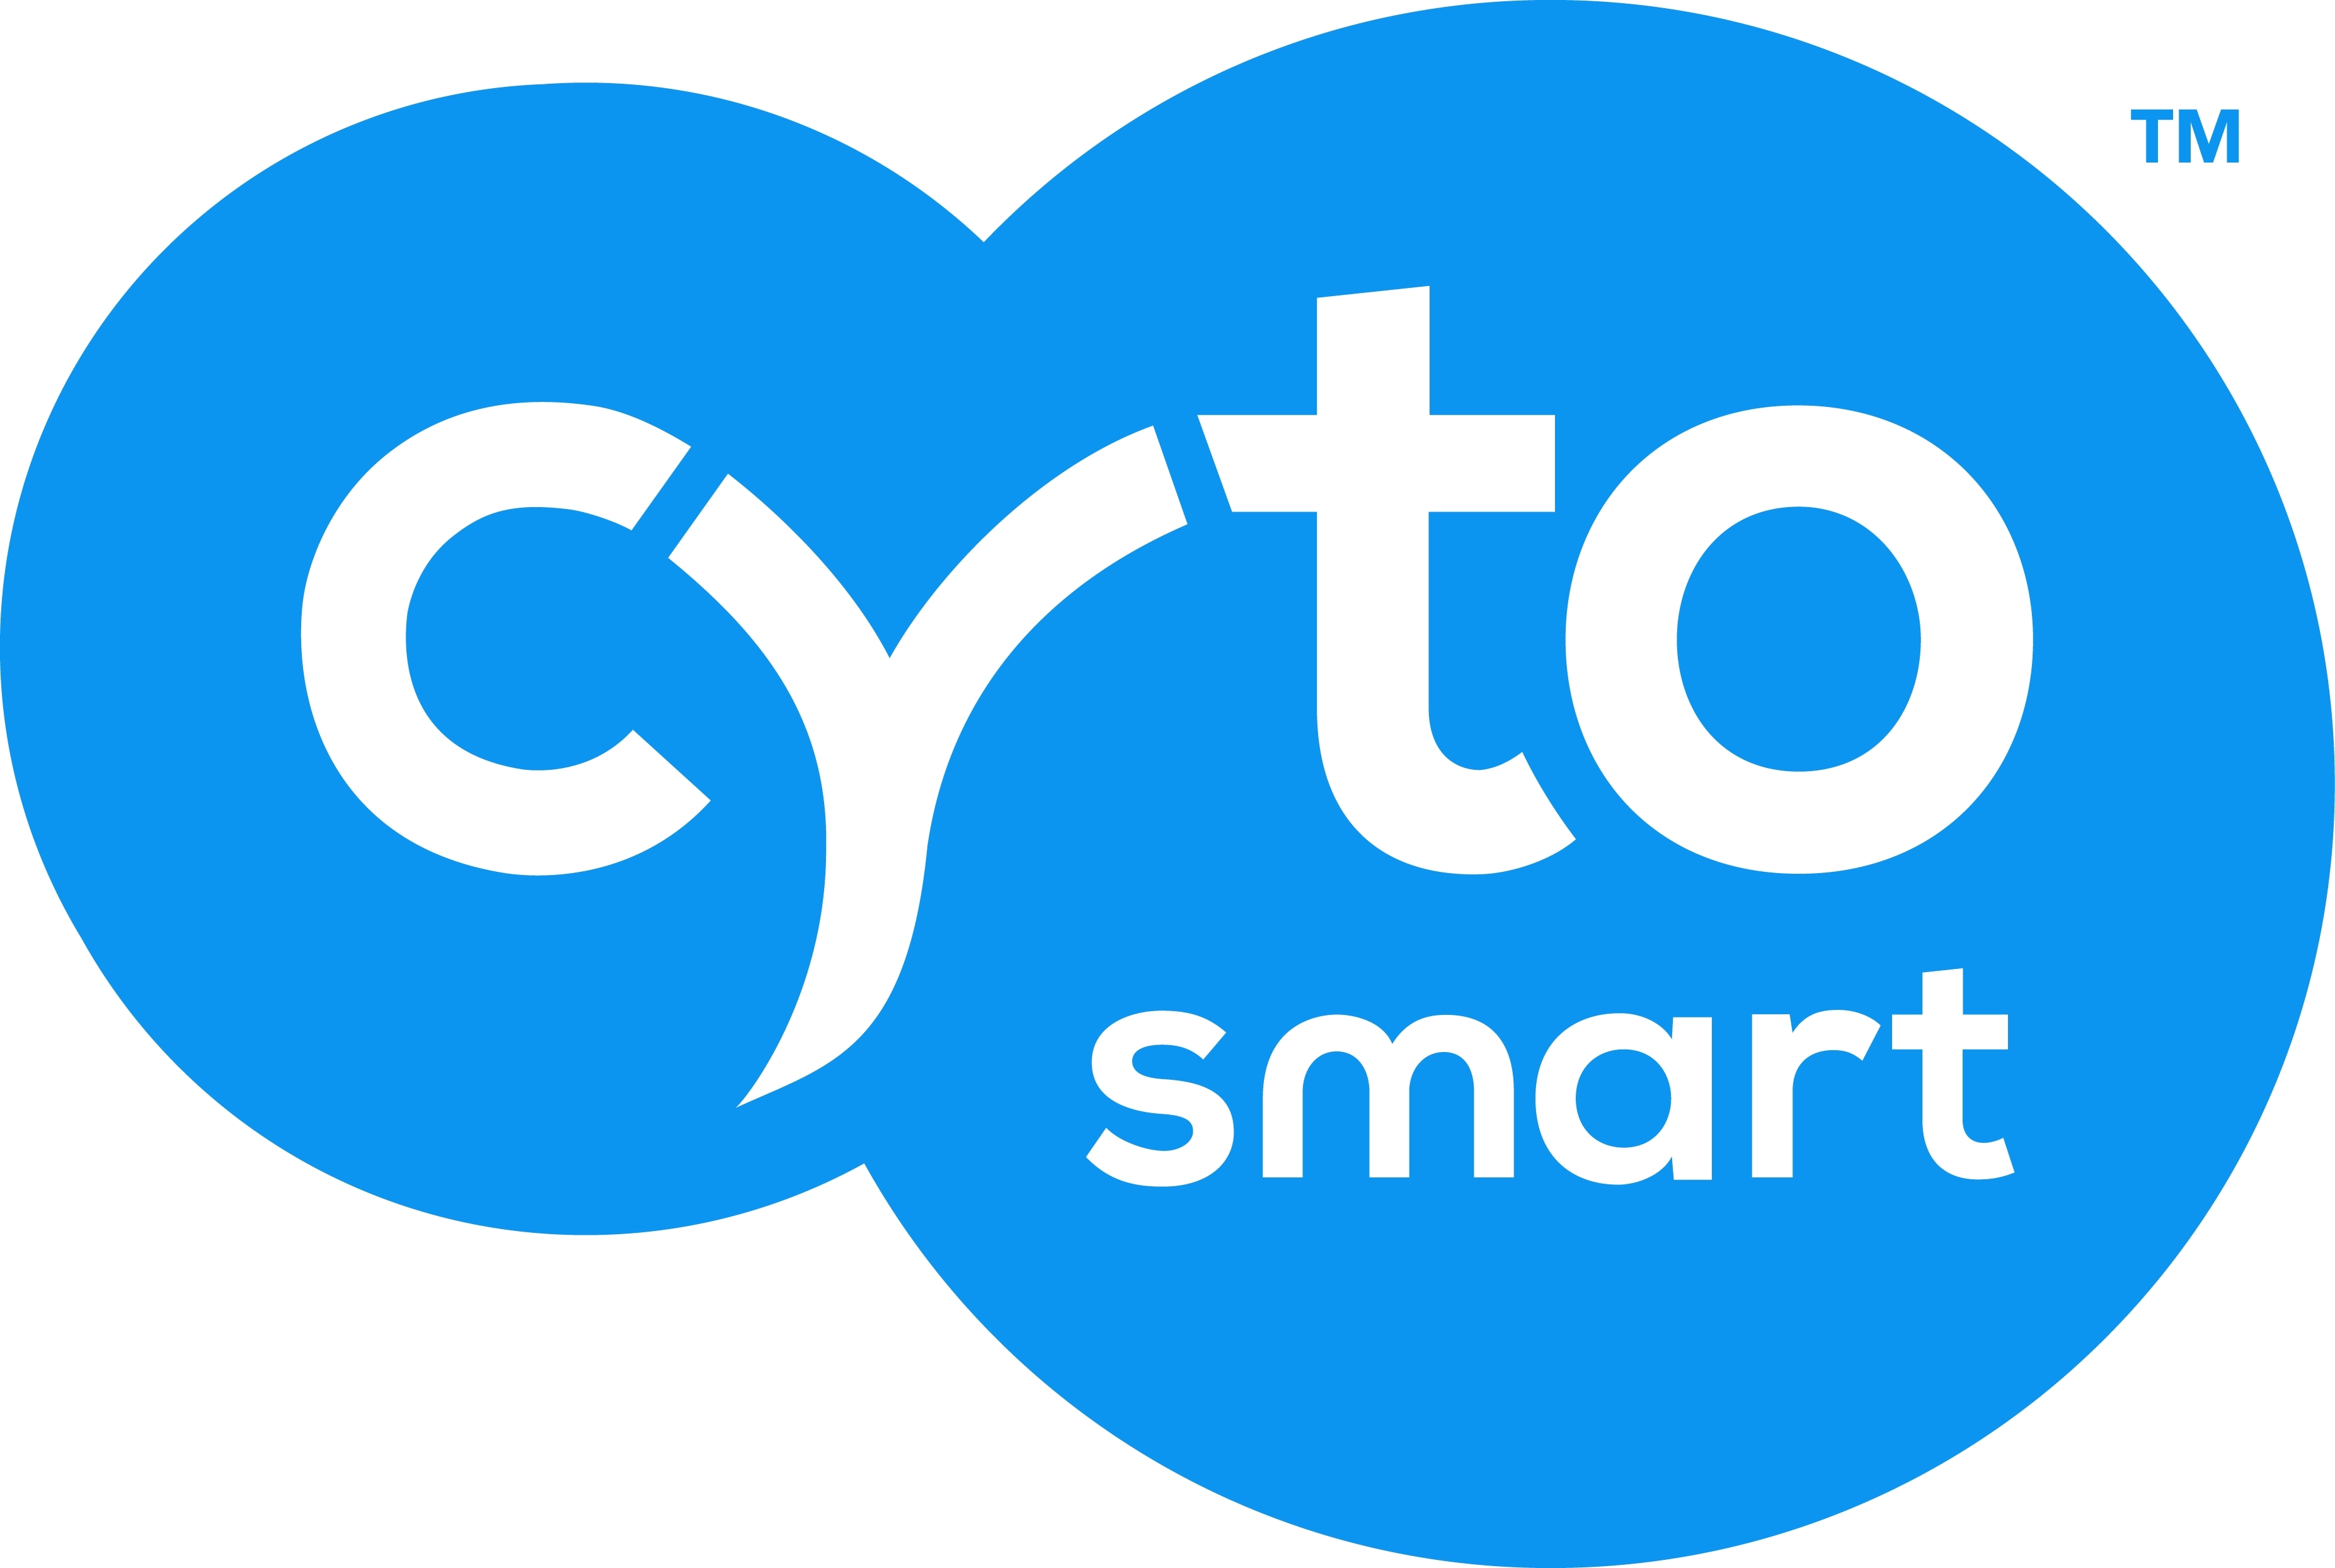 CytoSMART logo